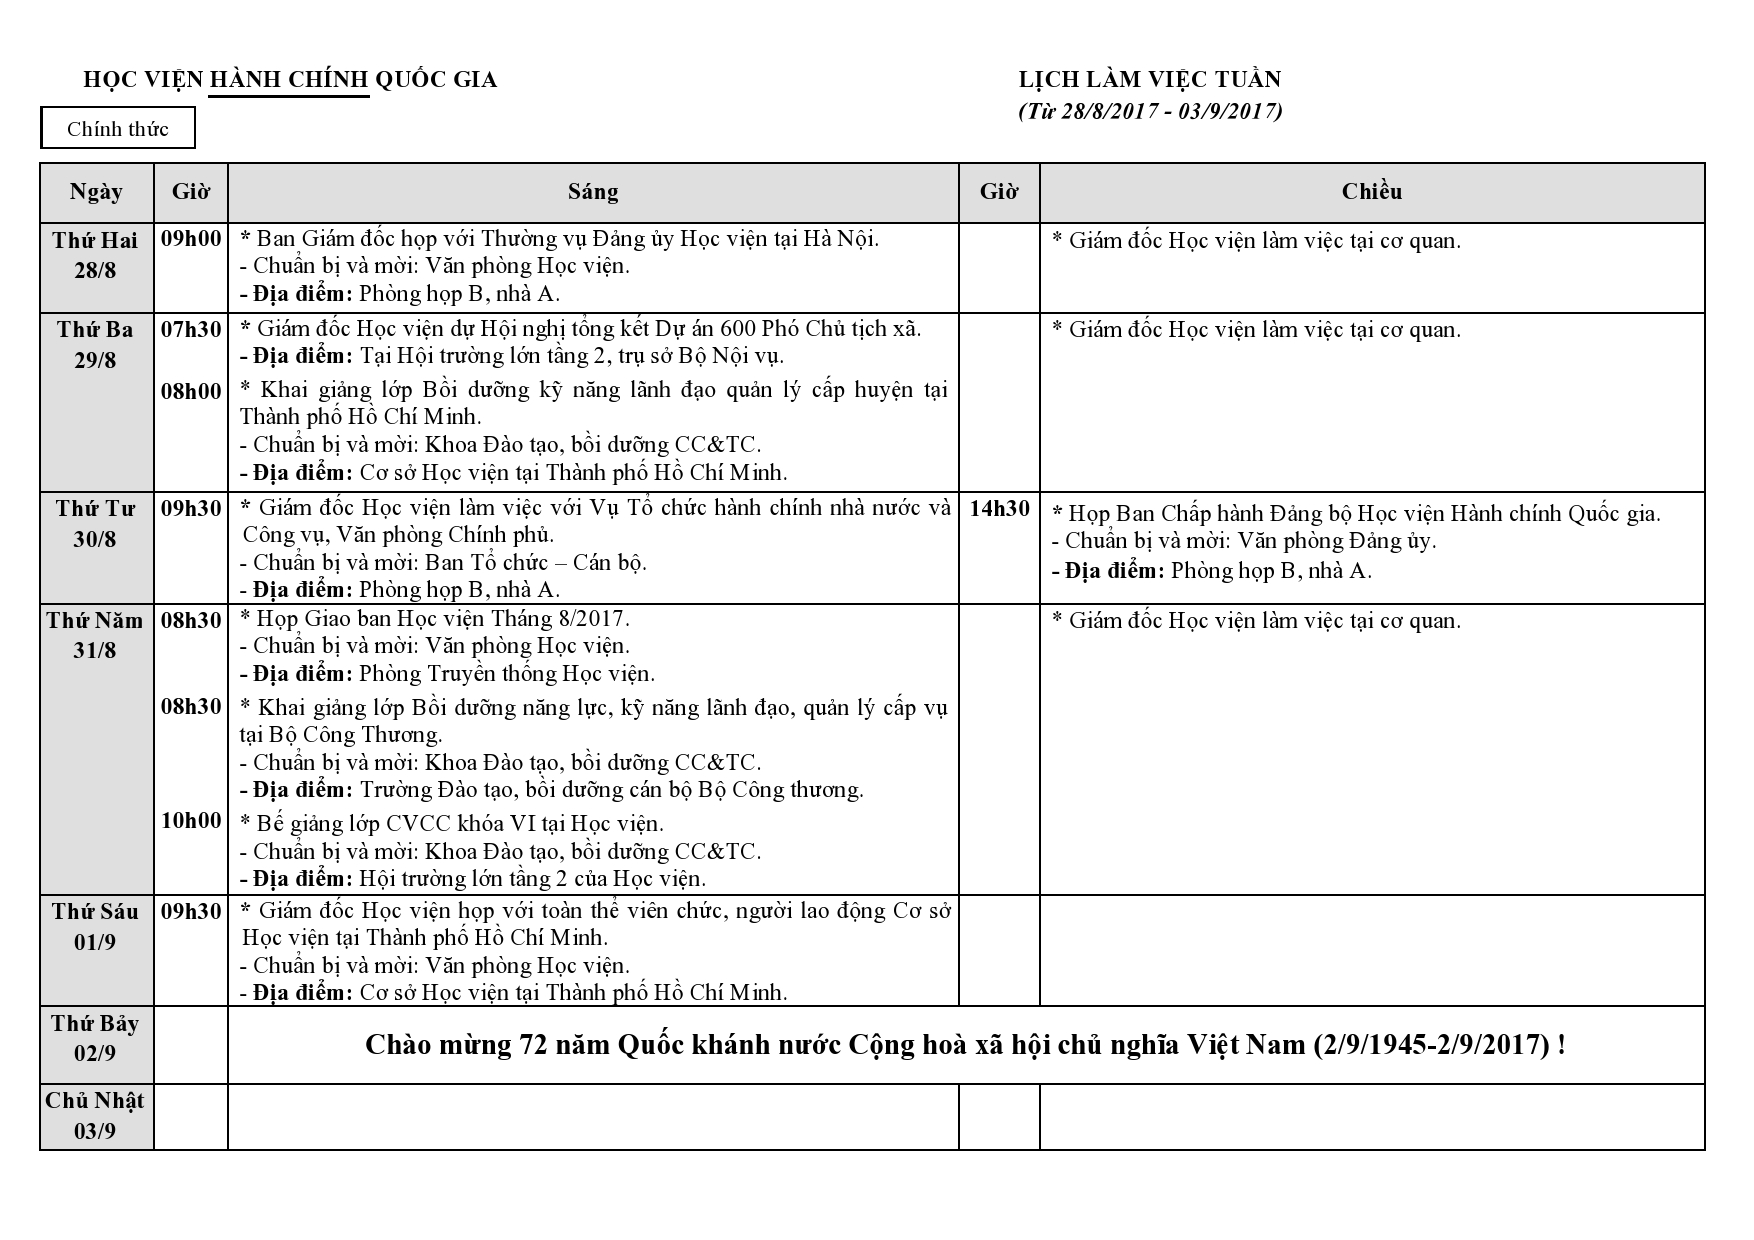 Lịch tuần chính thức HV từ 28.8 - 03.9 (2)-page0001